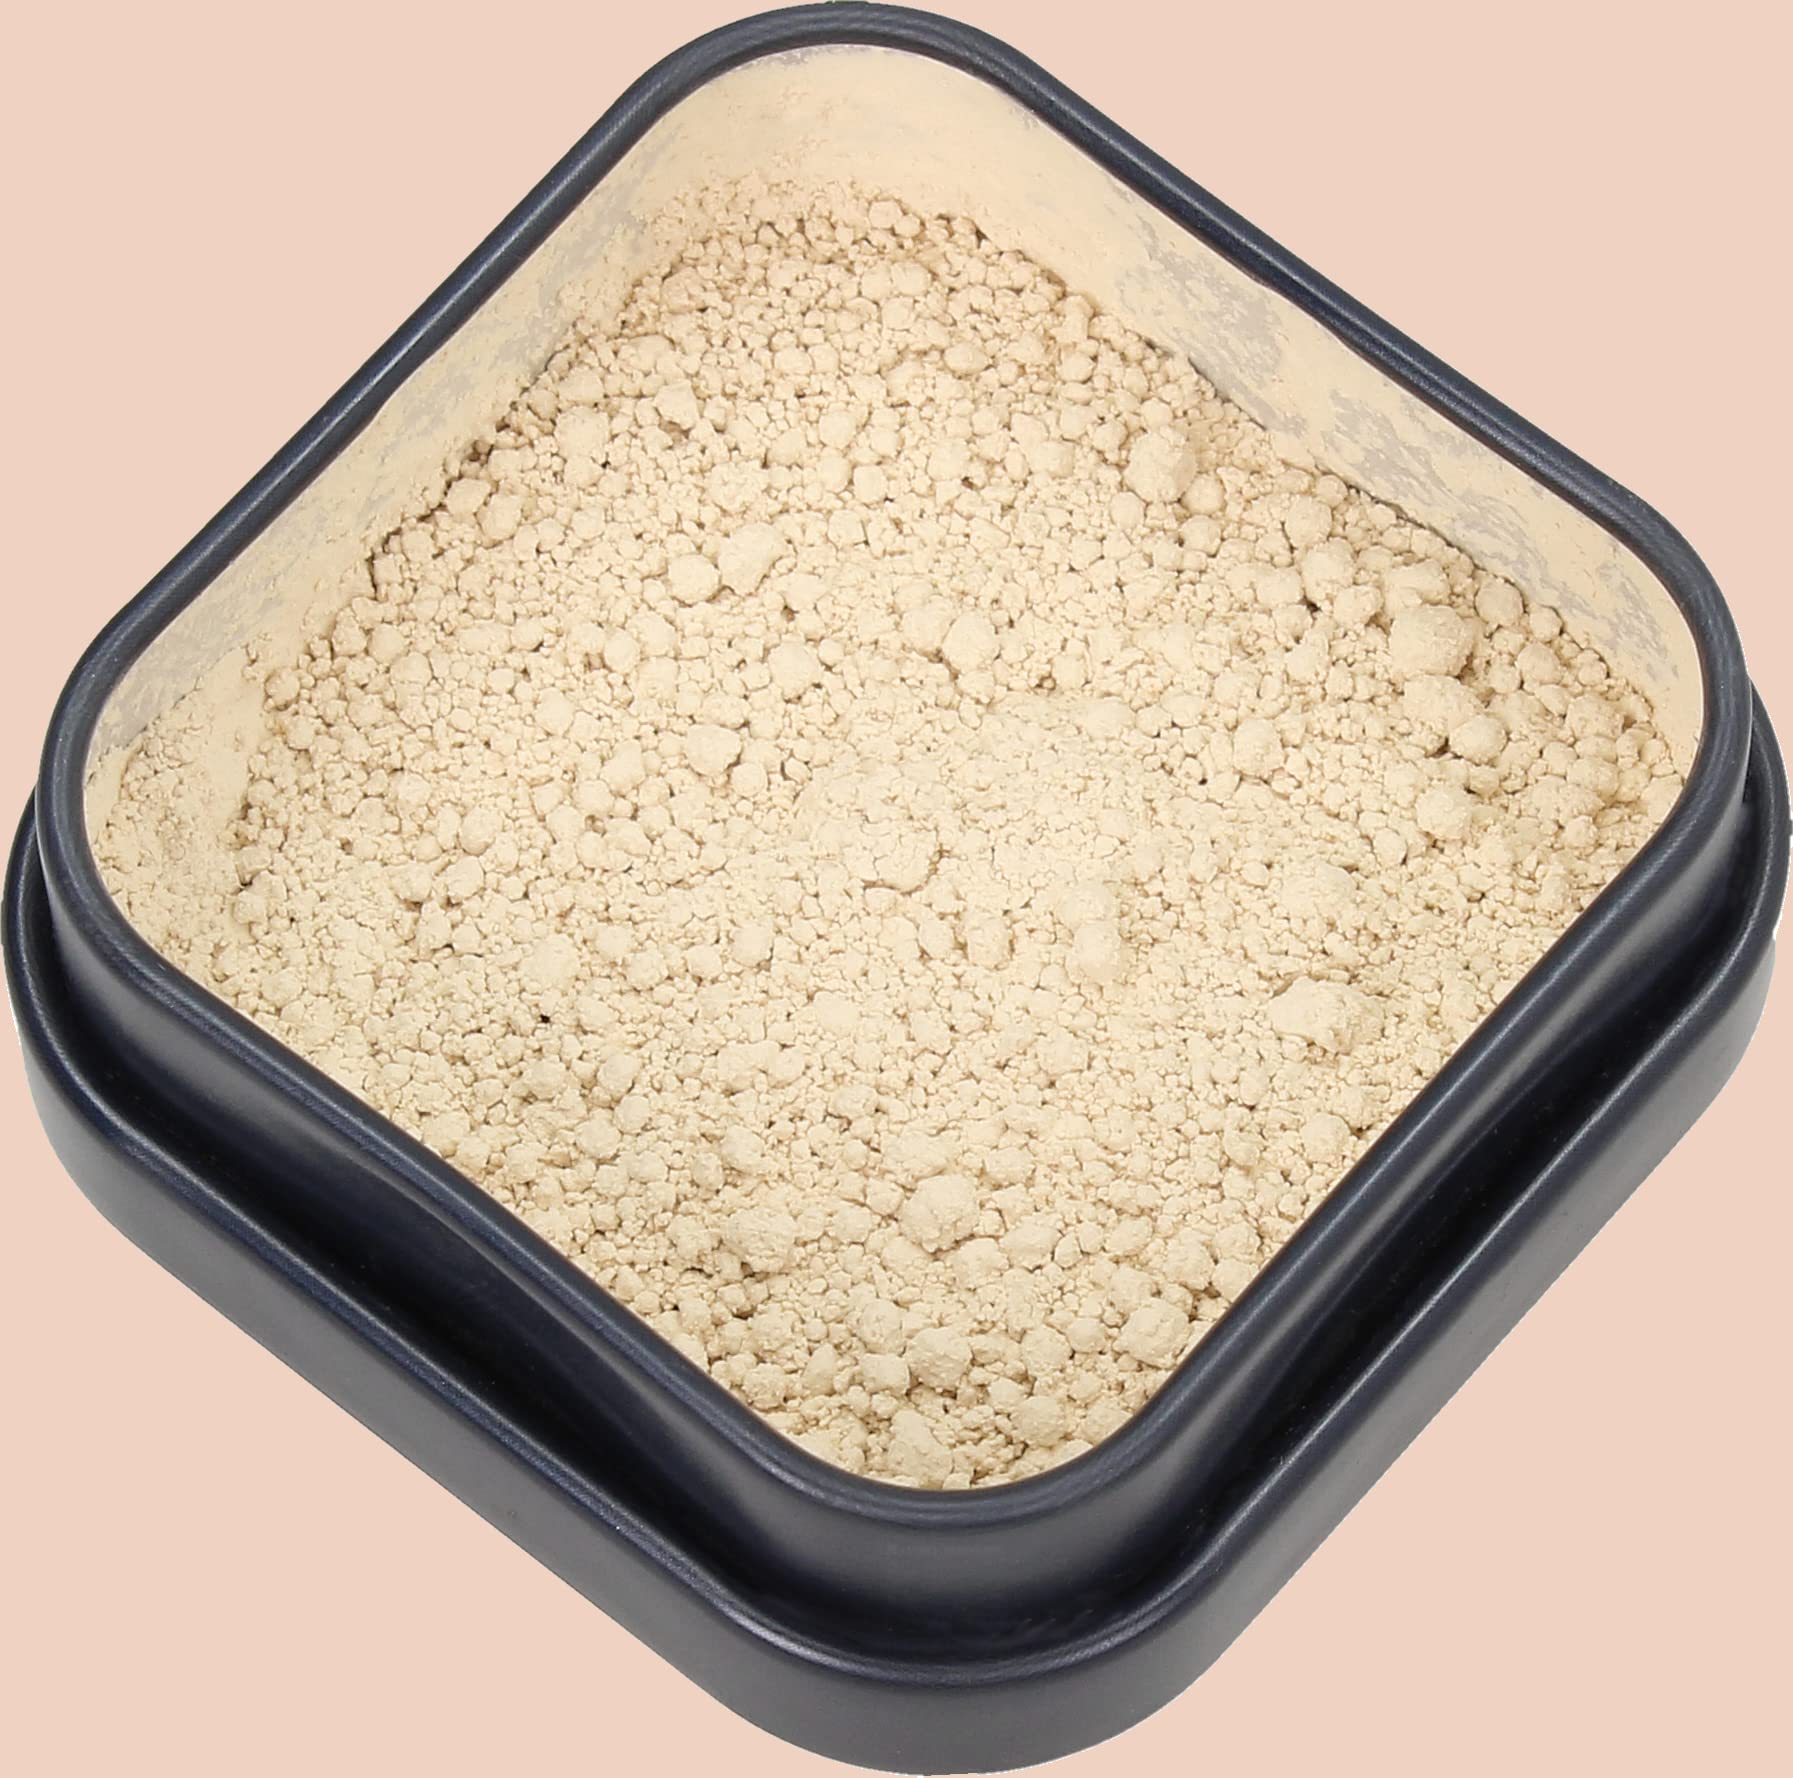 vary vace mineral powder foundation (alice/sand) loser Puder in für ein ebenmäßiges Finish, zertifizierte Naturkosmetik, langanhaltend, vegan, plastikfrei im Weißblech Döschen, nachfüllbar